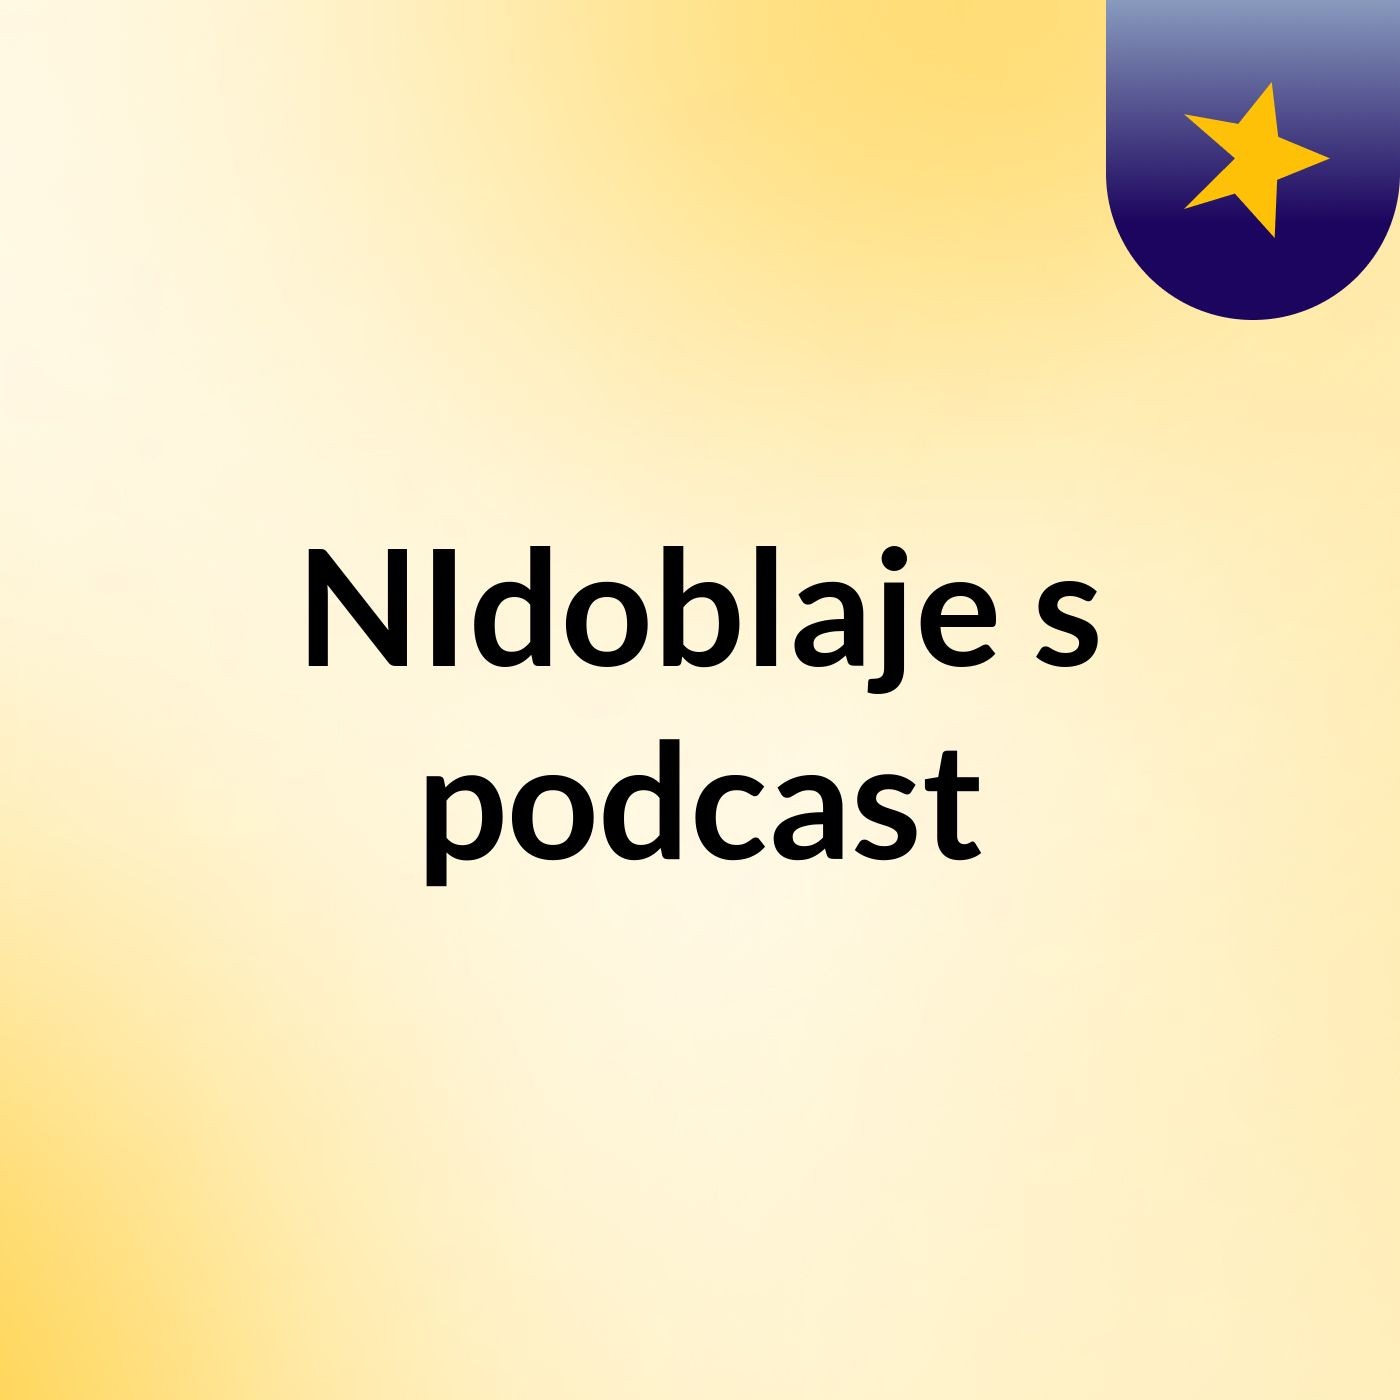 NIdoblaje's podcast